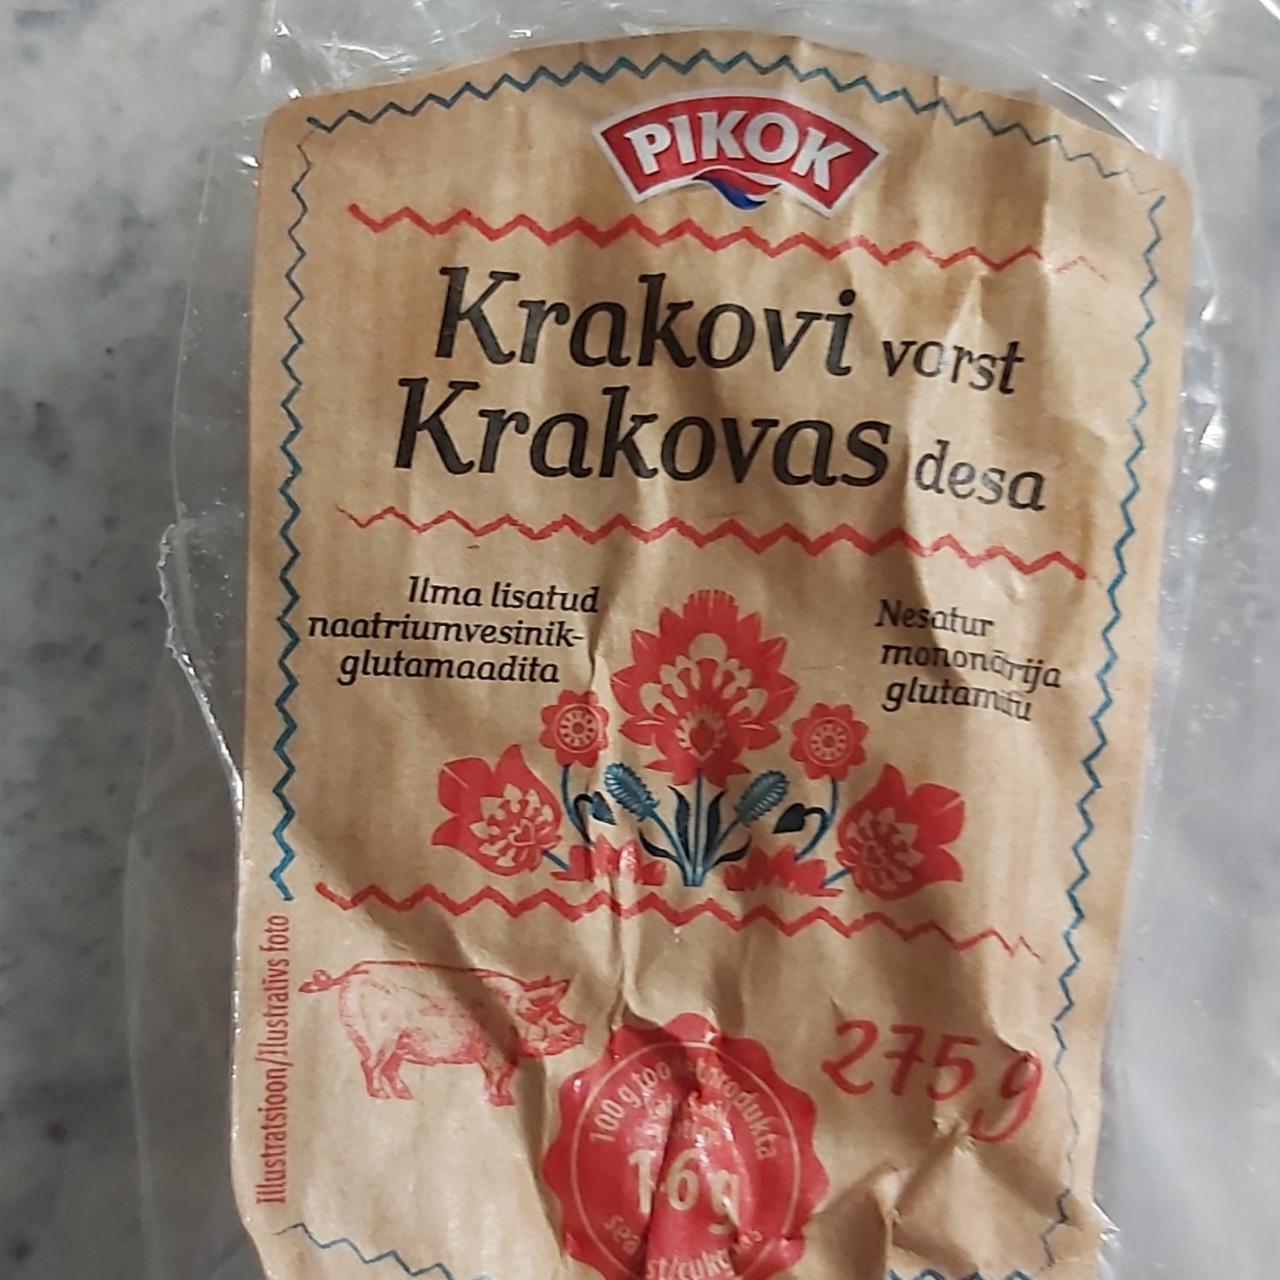 Фото - краковская колбаса Pikok